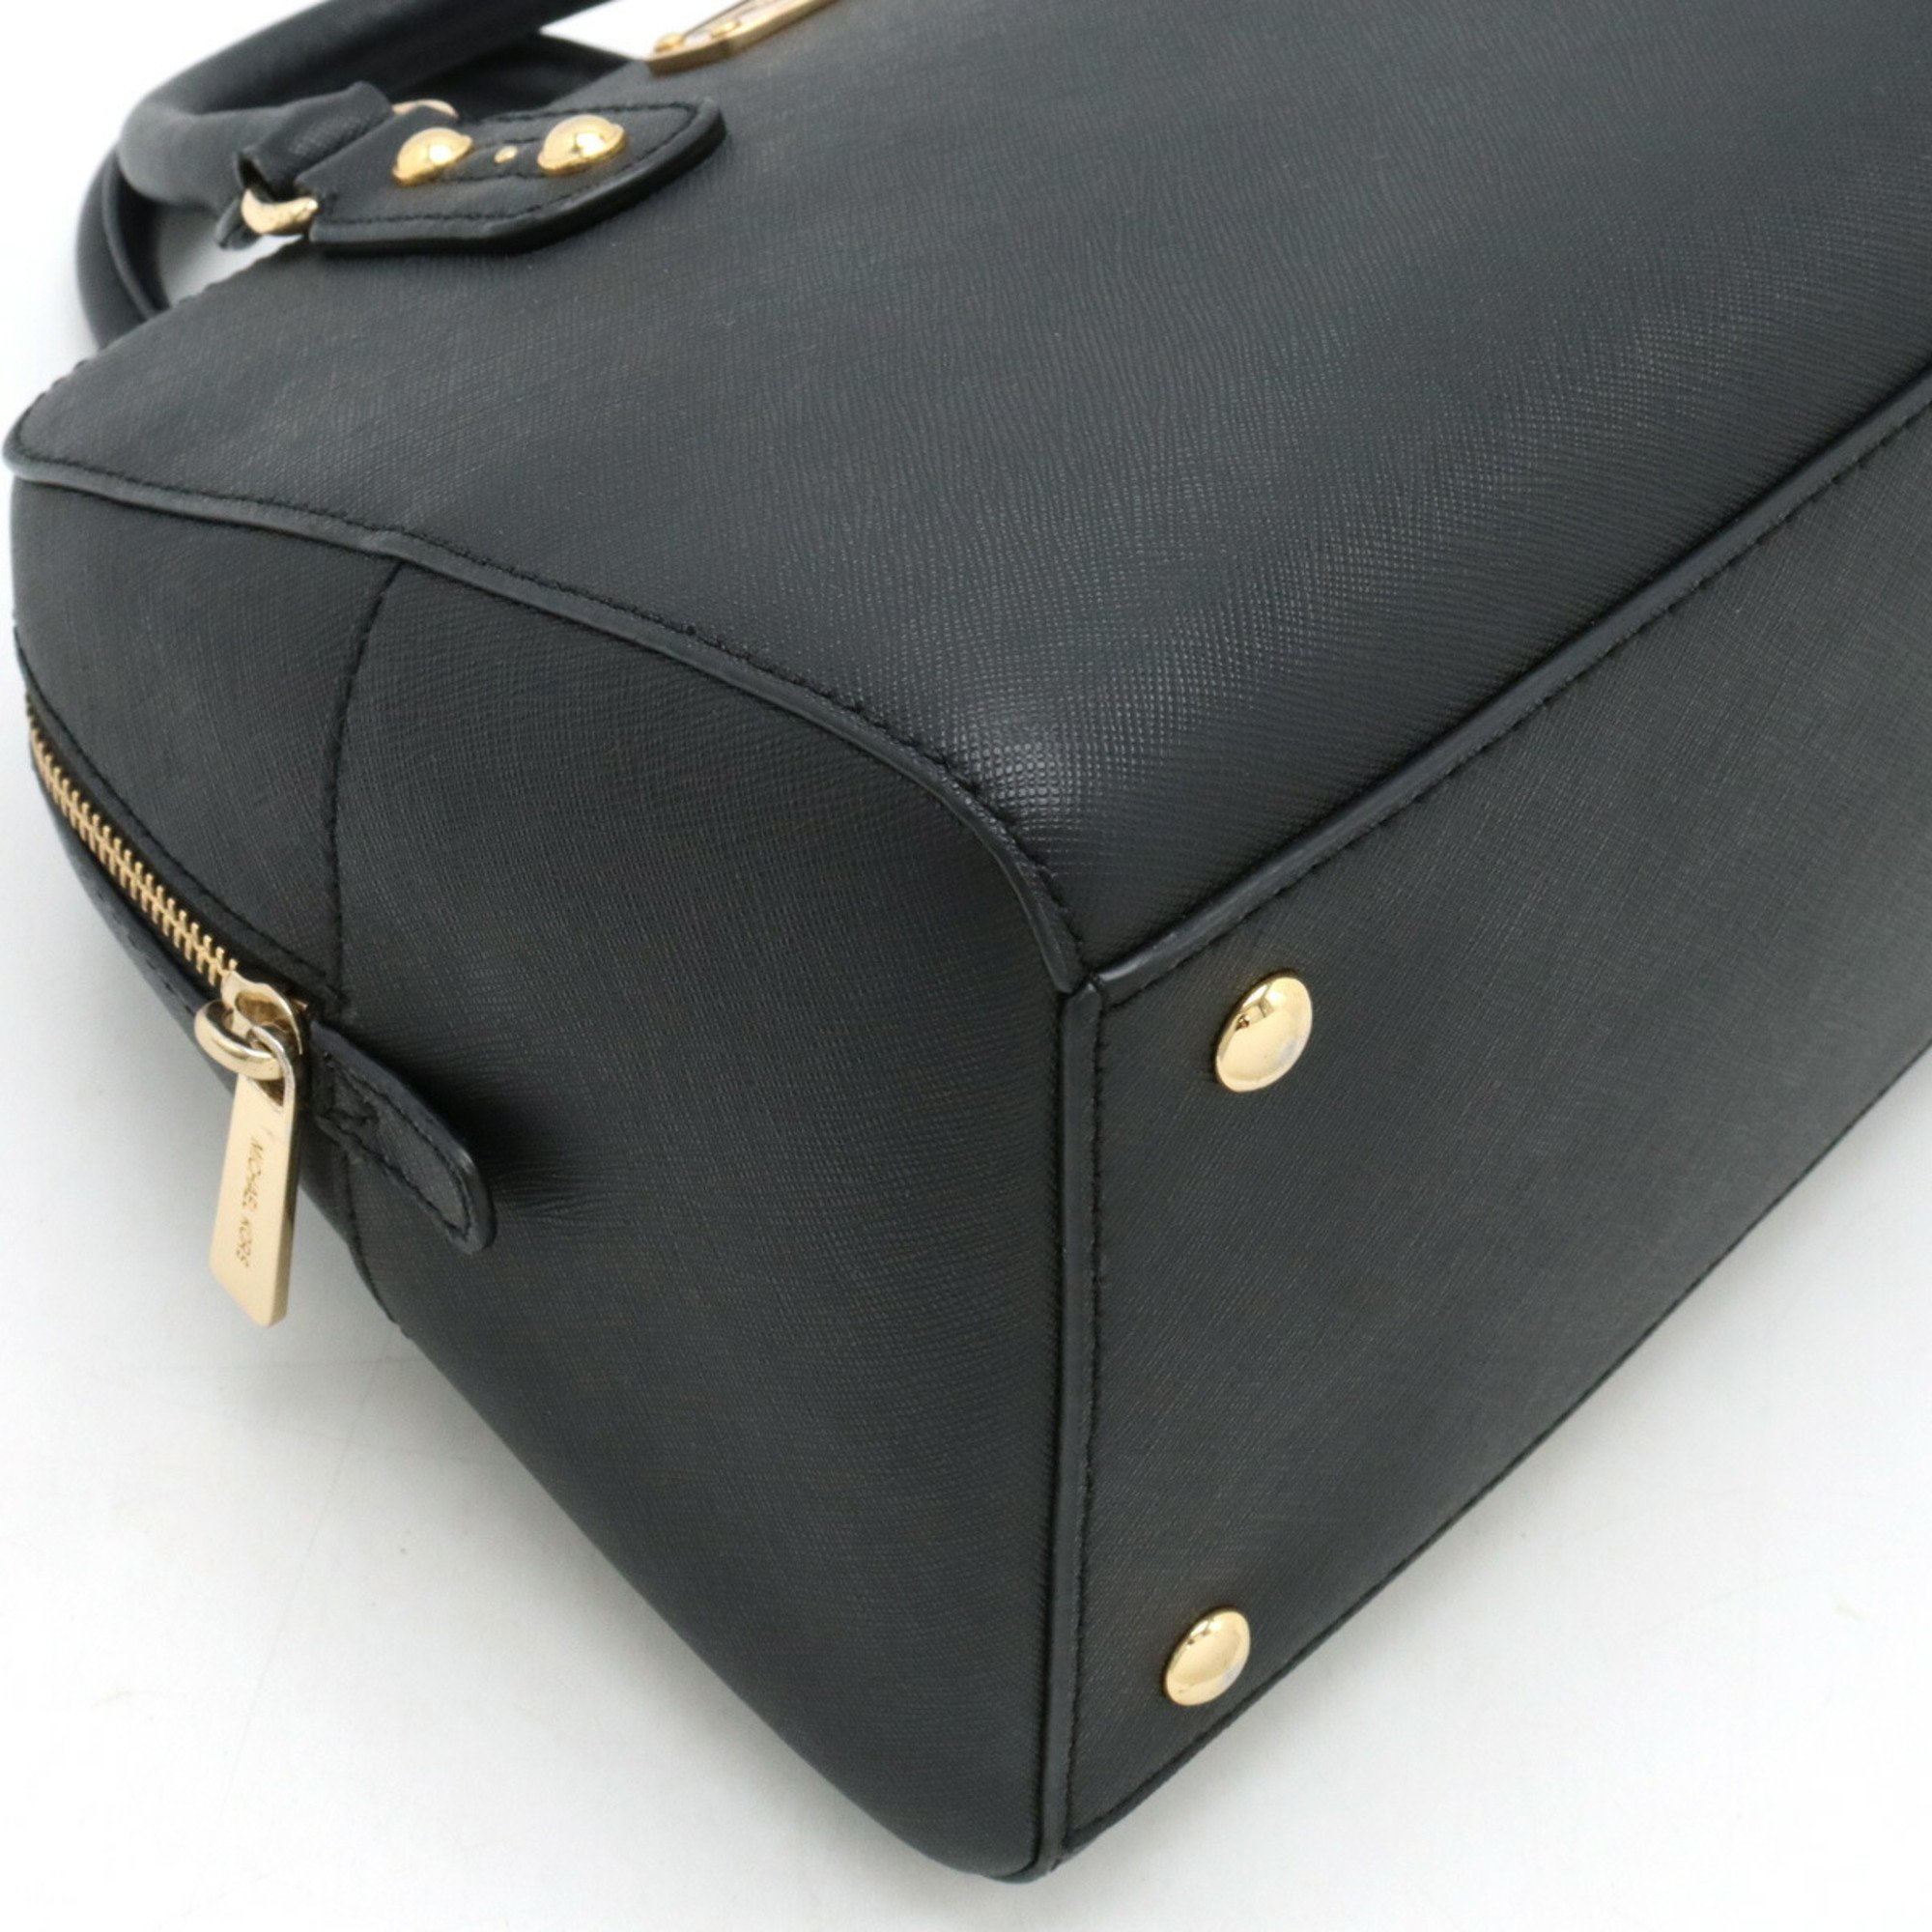 MICHAEL KORS Michael Kors handbag shoulder bag leather black 35S7GD2S1L